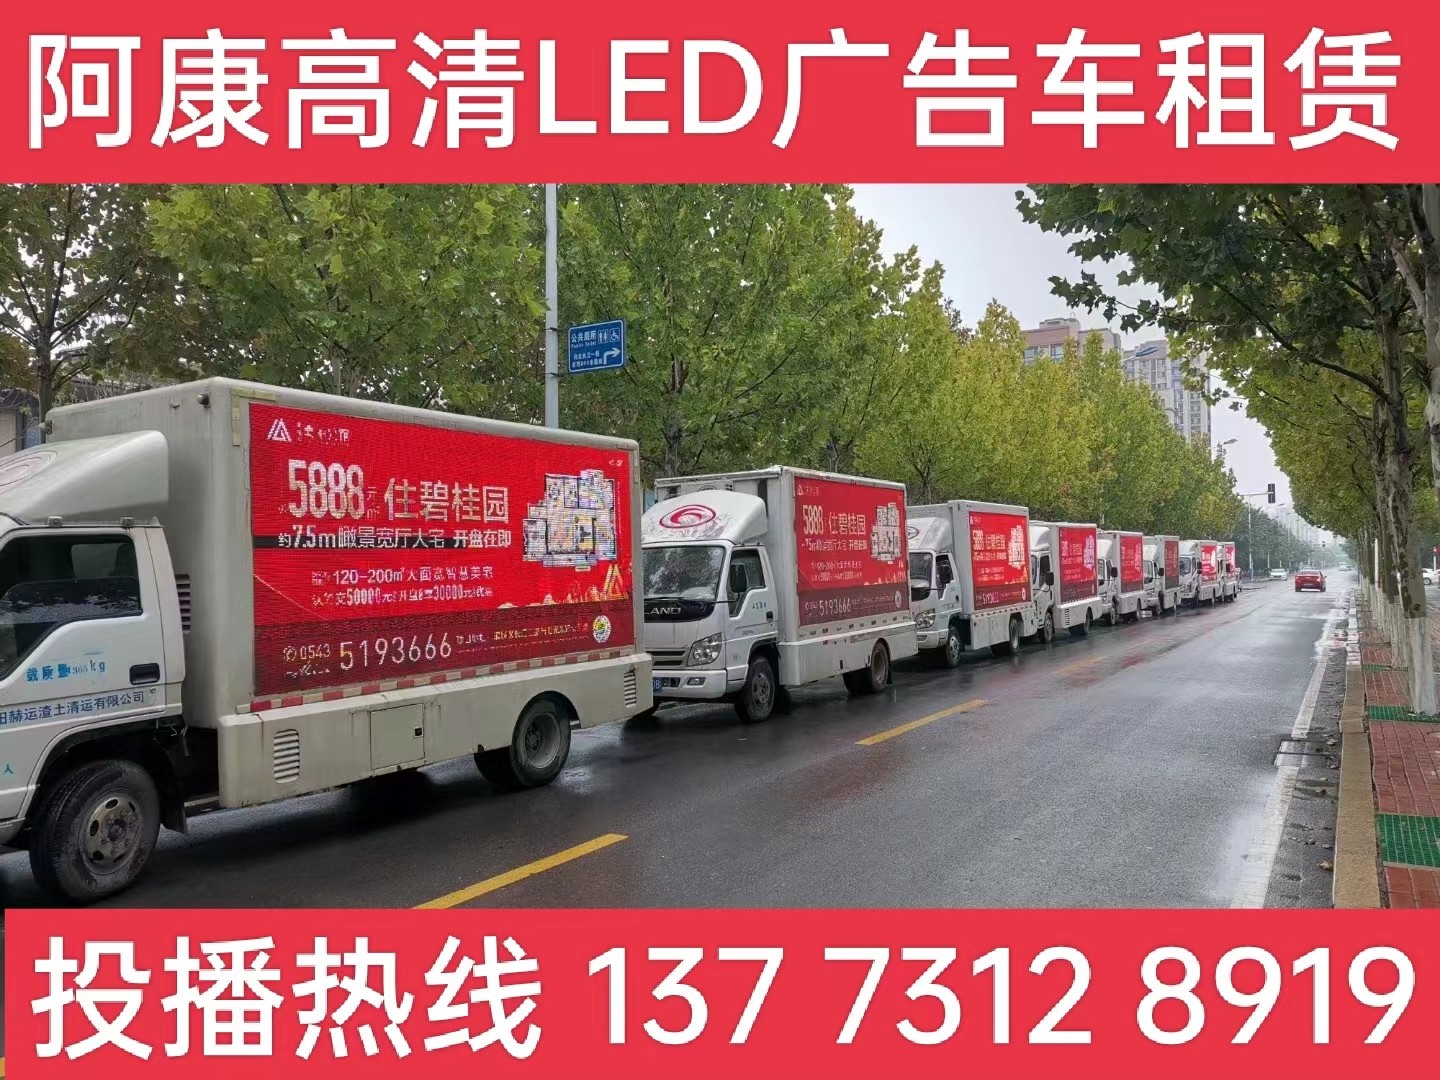 泗阳县宣传车租赁公司-楼盘LED广告车投放